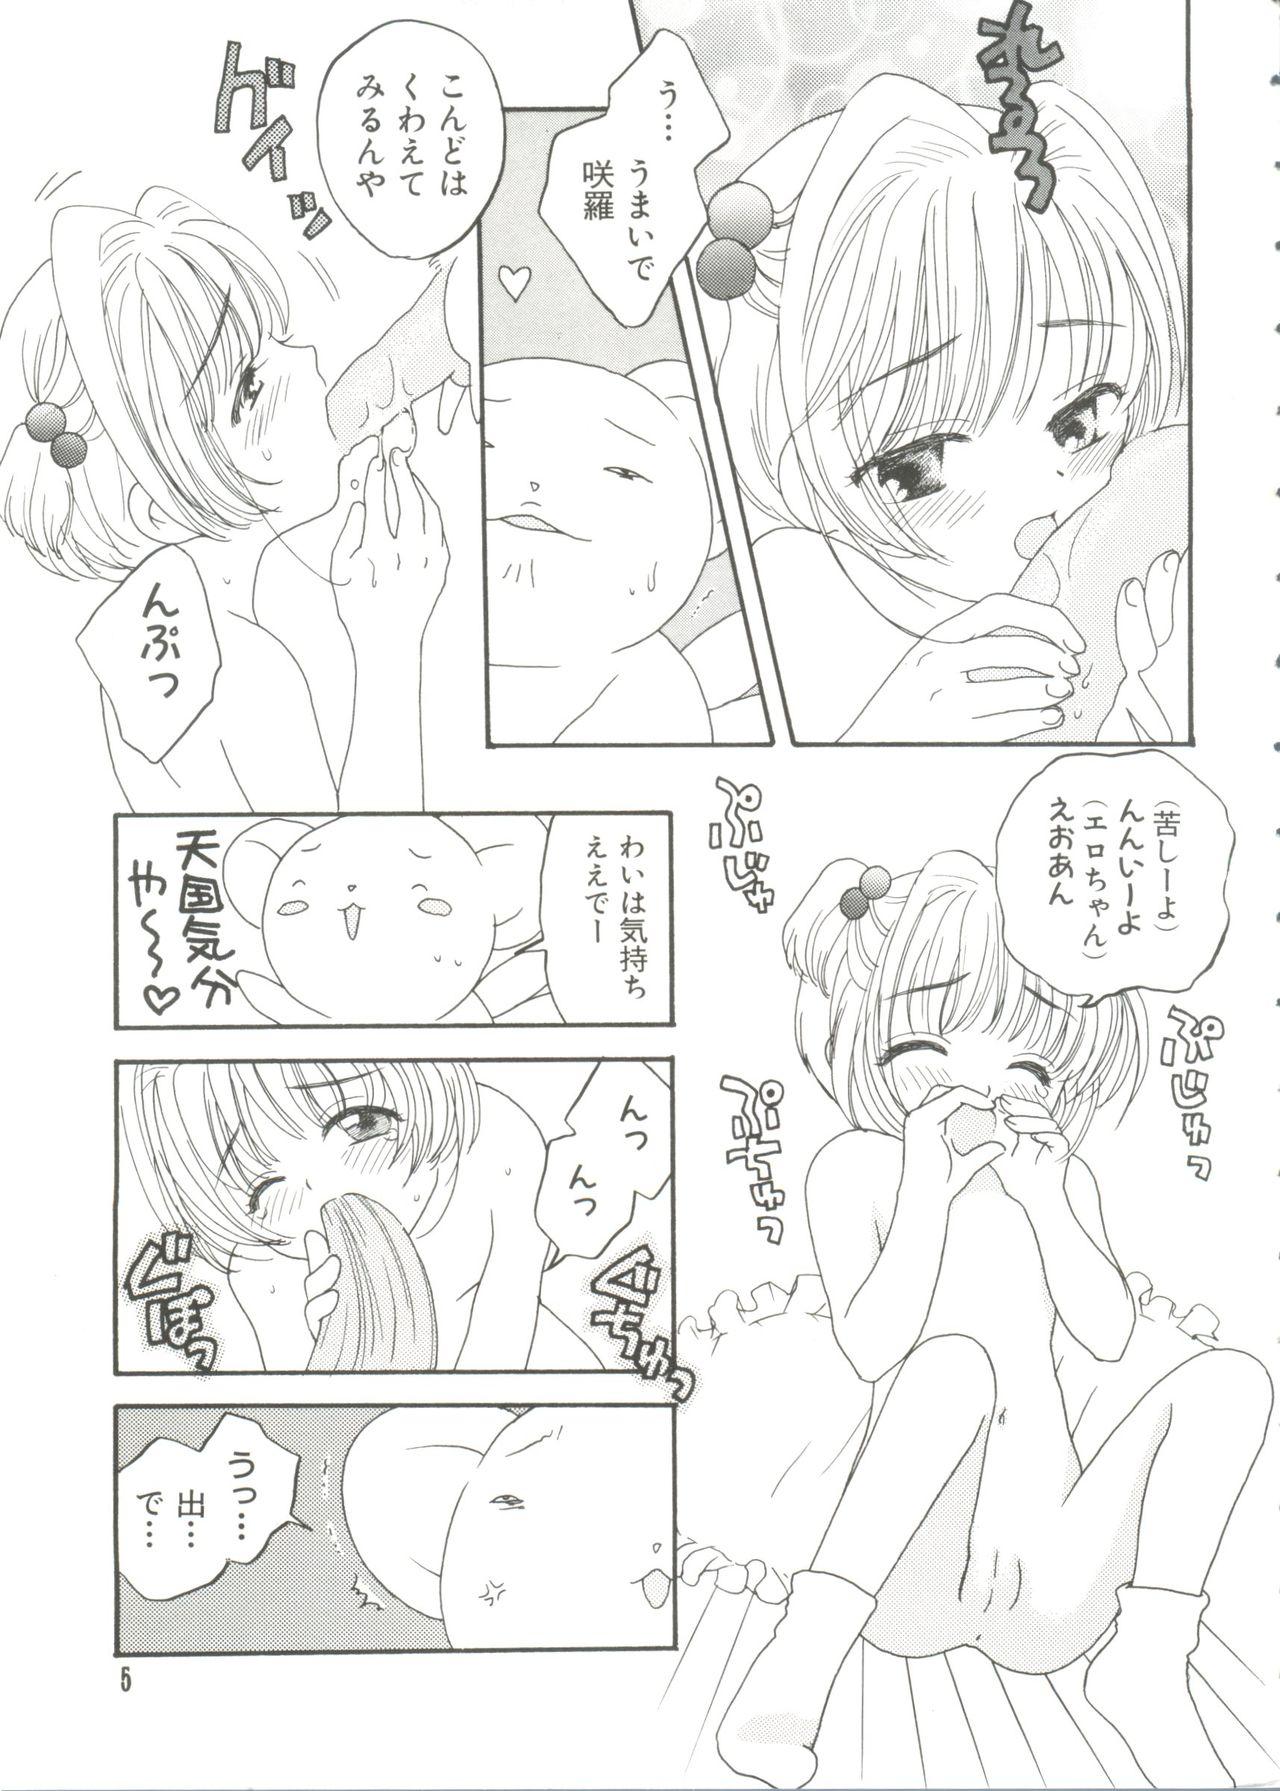 Female Paro Paro Oukoku 4 - Cardcaptor sakura Tats - Page 5